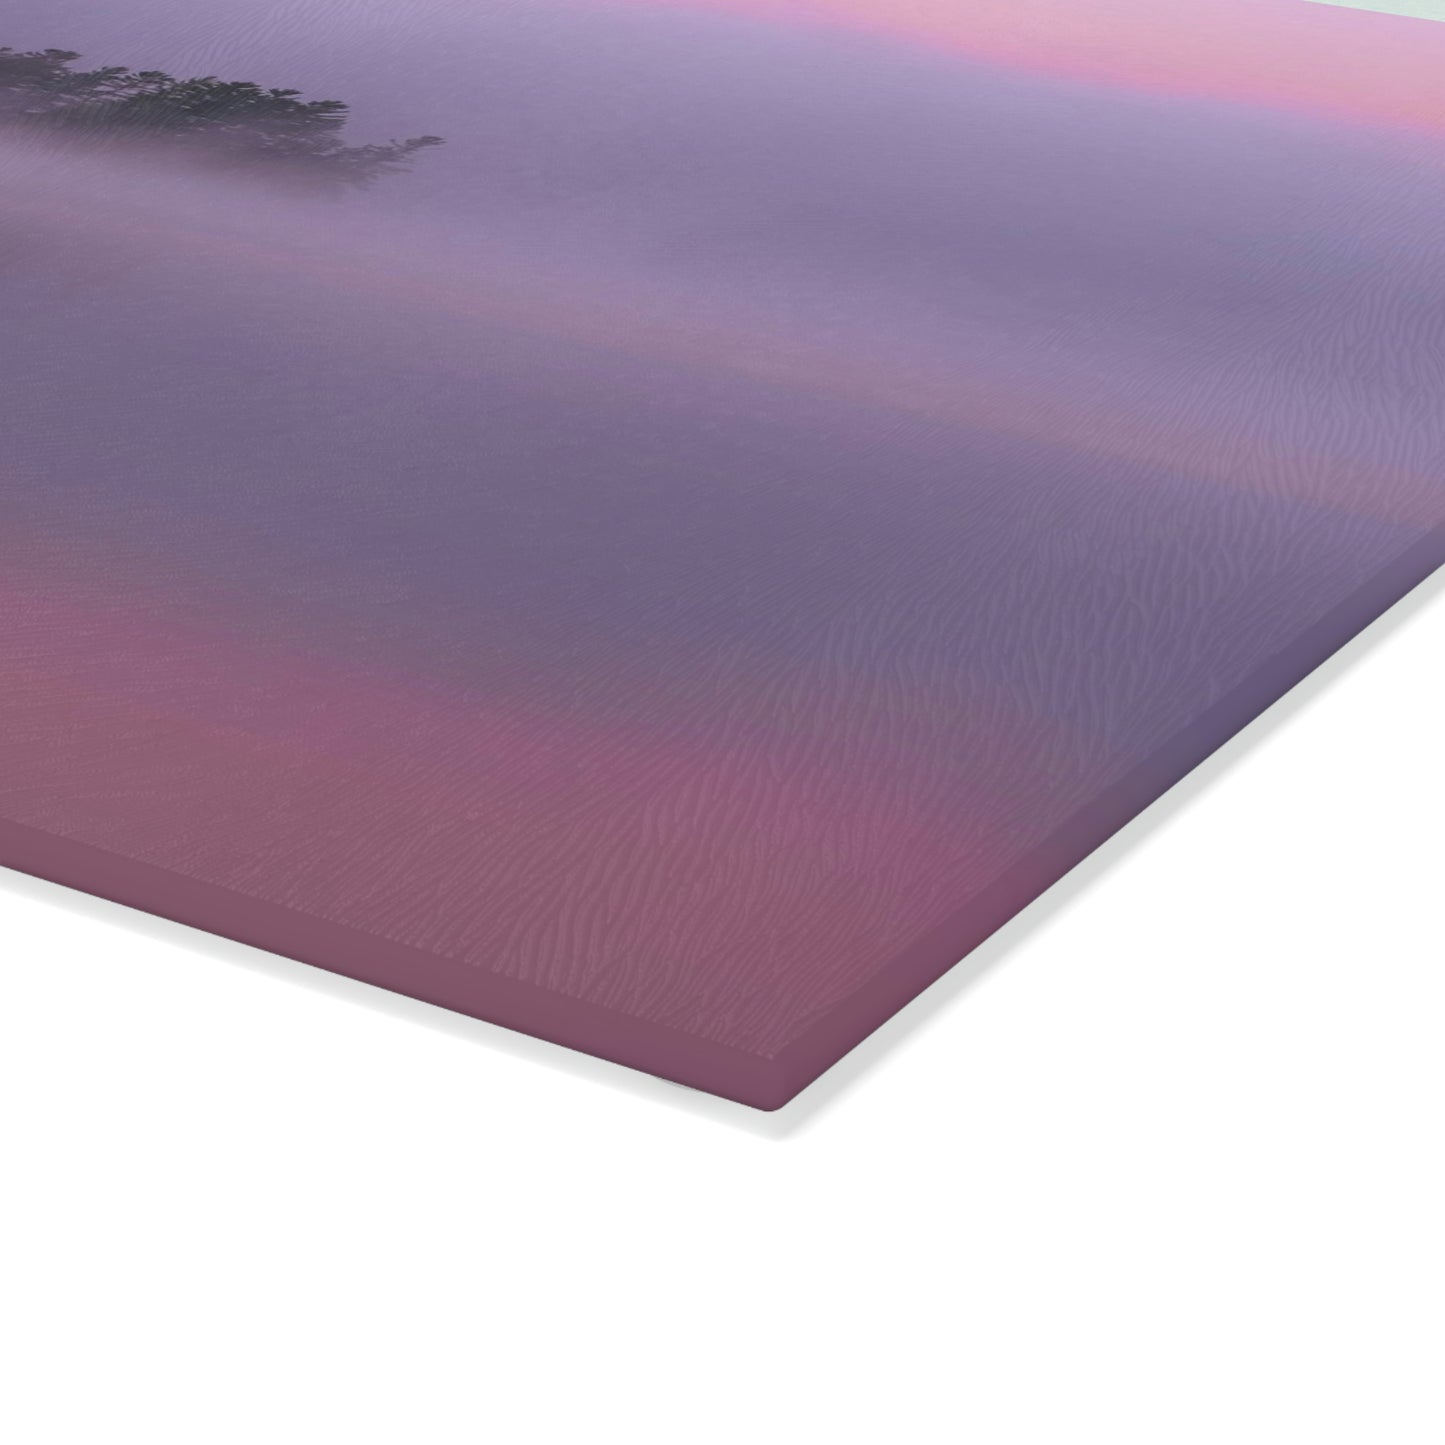 Glass Cutting Board - Crisp Autumn Sunrise, Tupper Lake